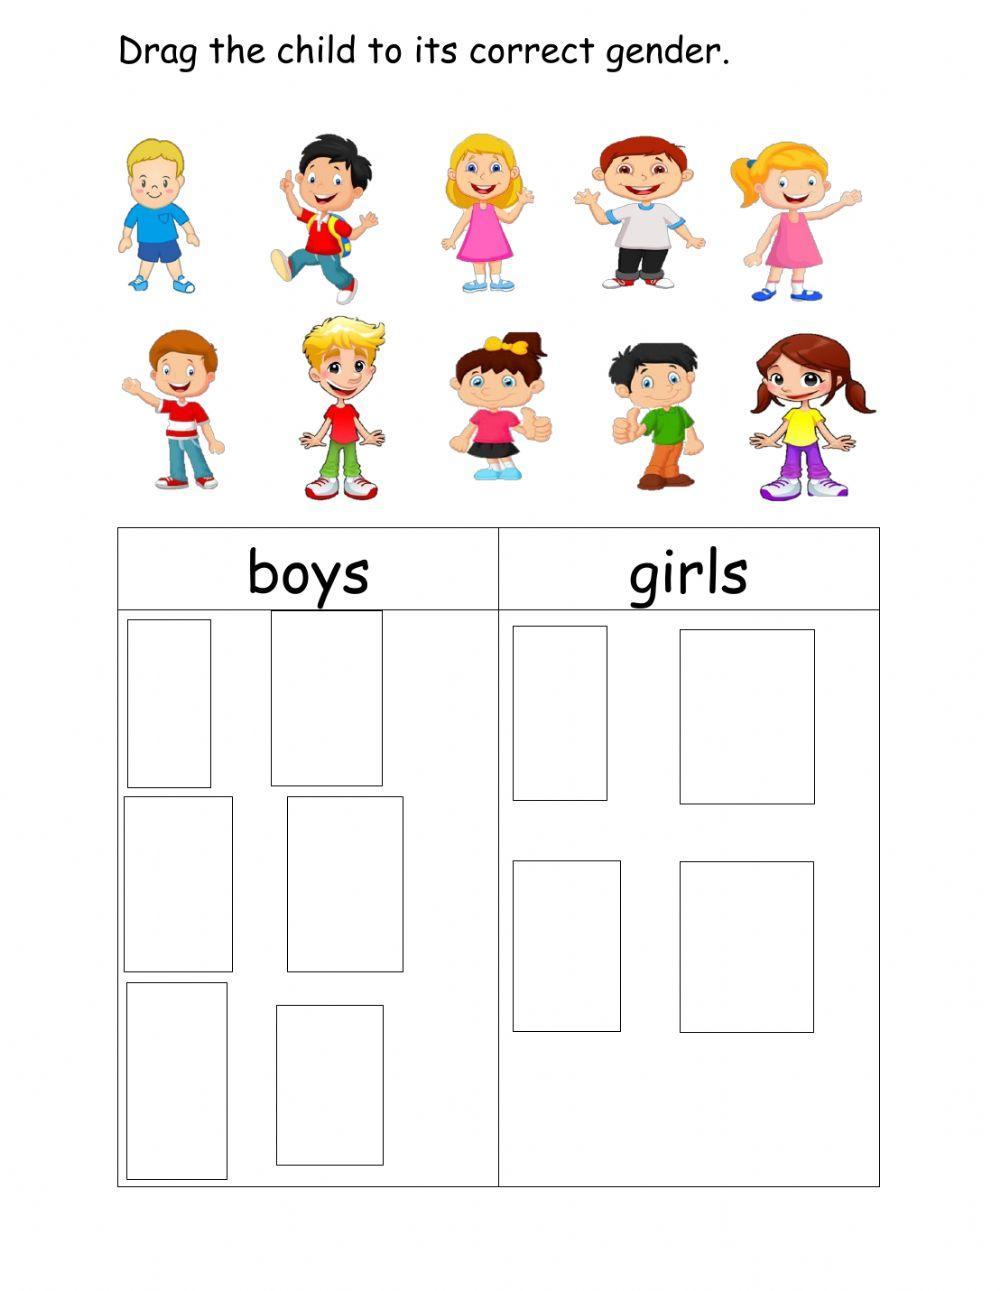 Boy Or Girl?, Online Activities